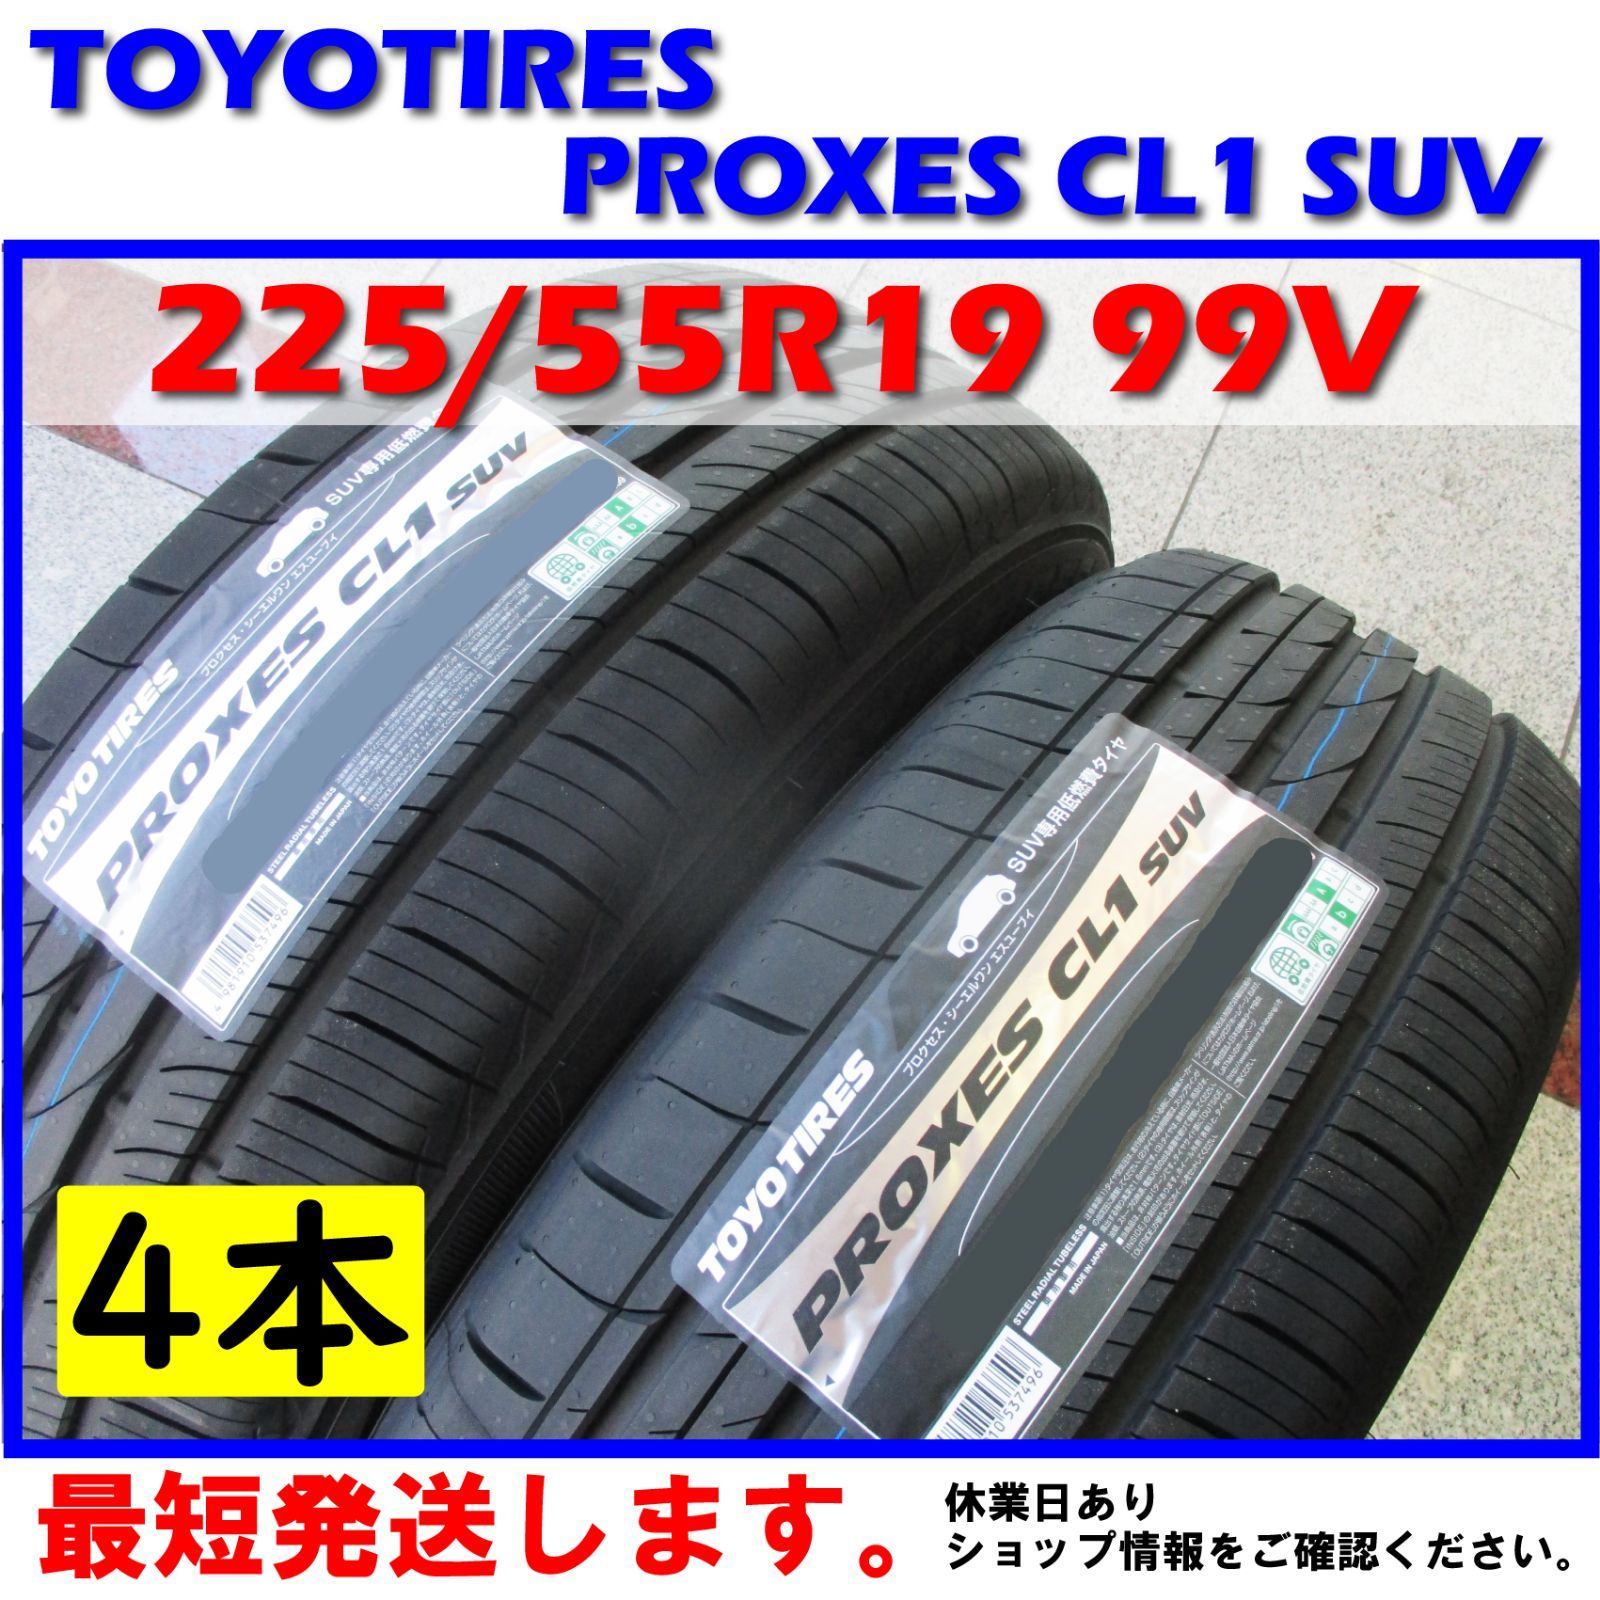 TOYO プロクセス CL1 SUV 225/55r19 4本 トーヨータイヤ-